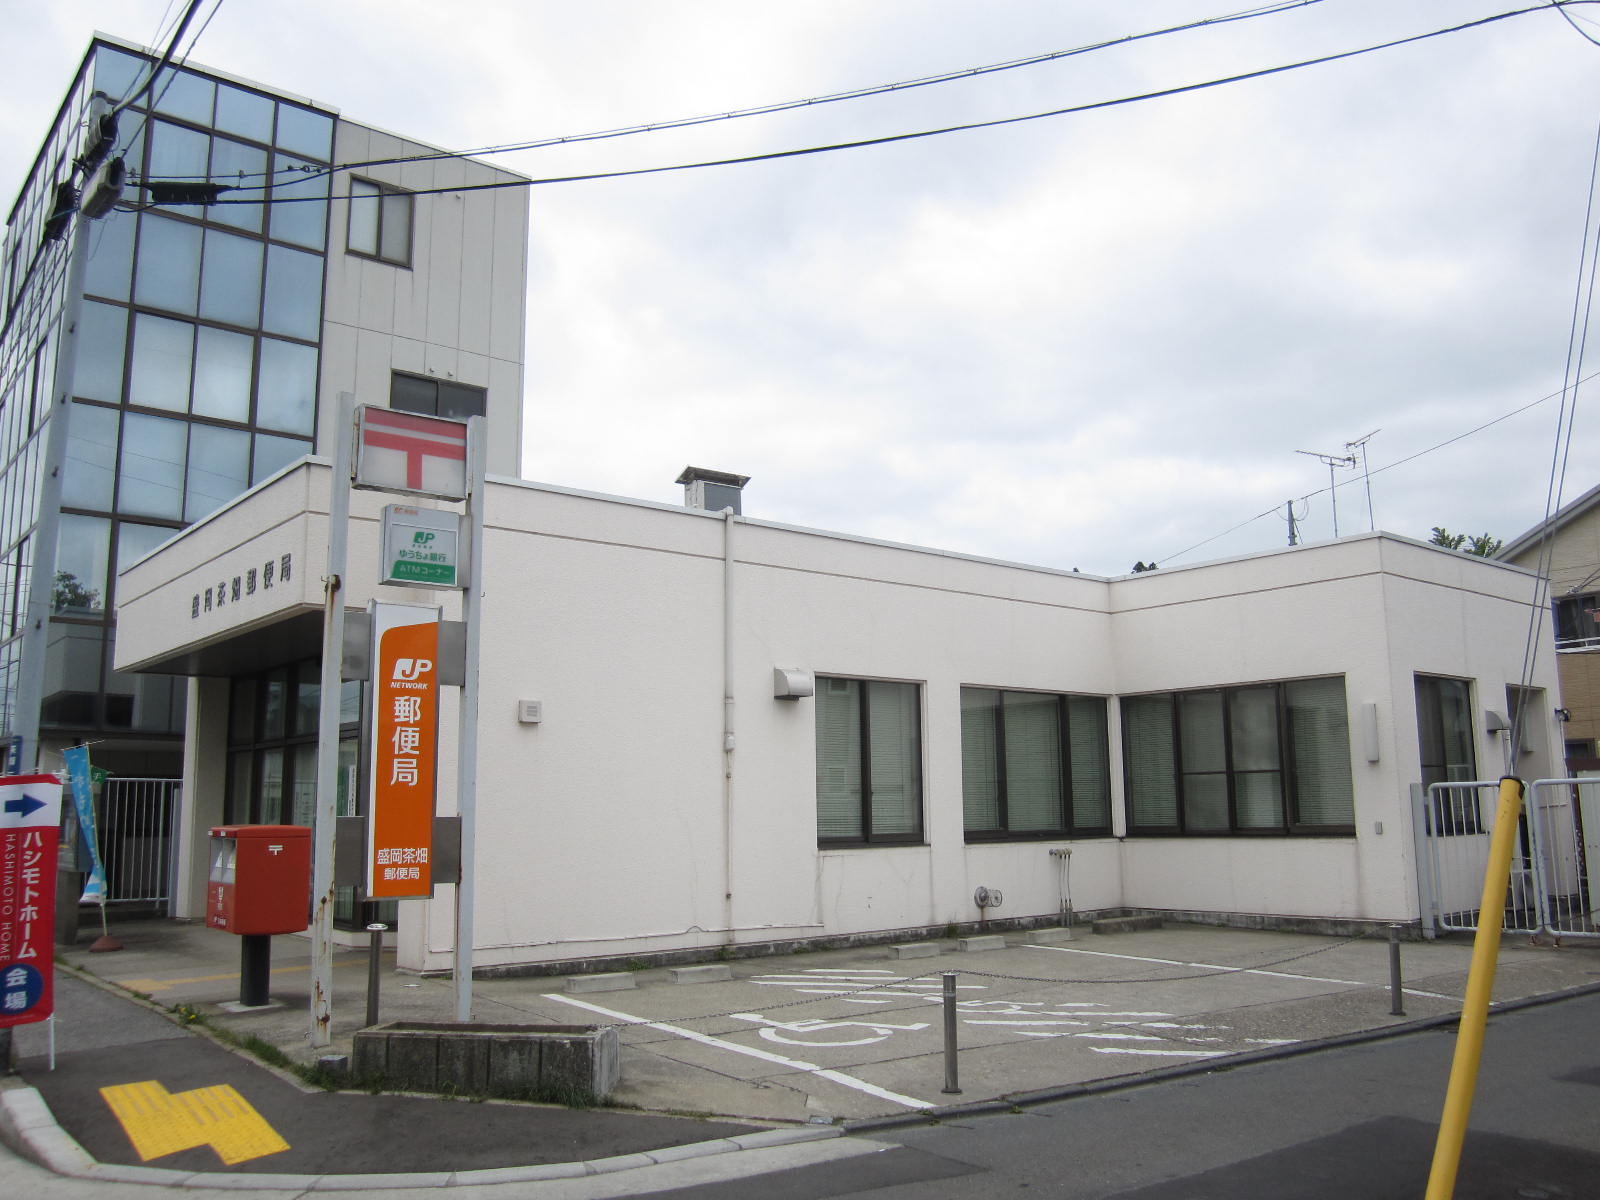 post office. 434m to Morioka tea garden post office (post office)